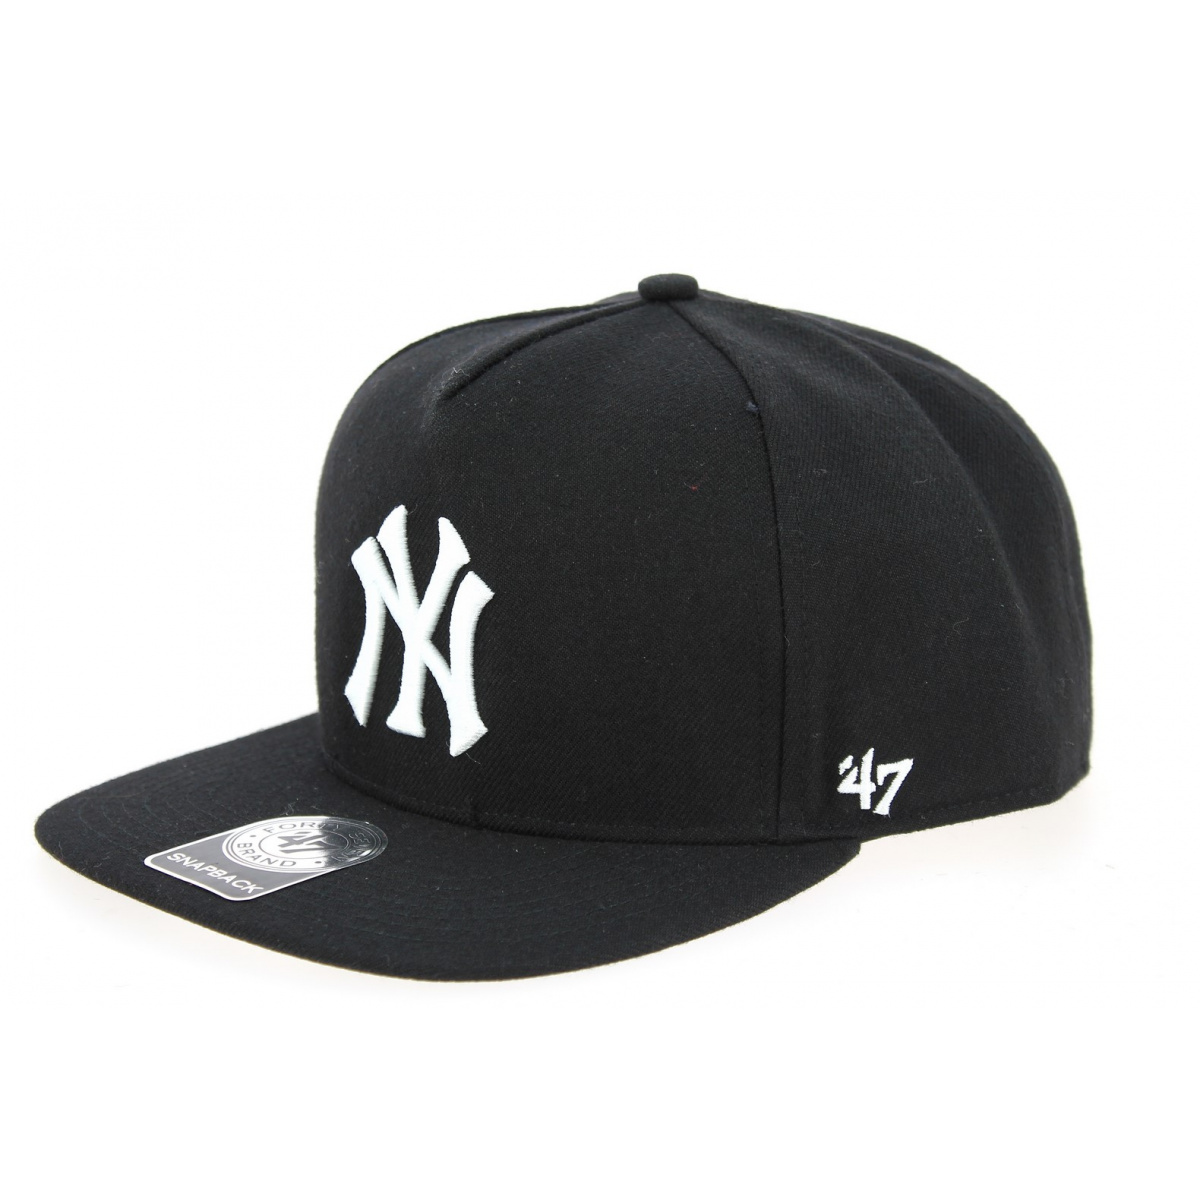 Acheter une casquette NY officielle ! Le plus grand choix de casquette de  New York